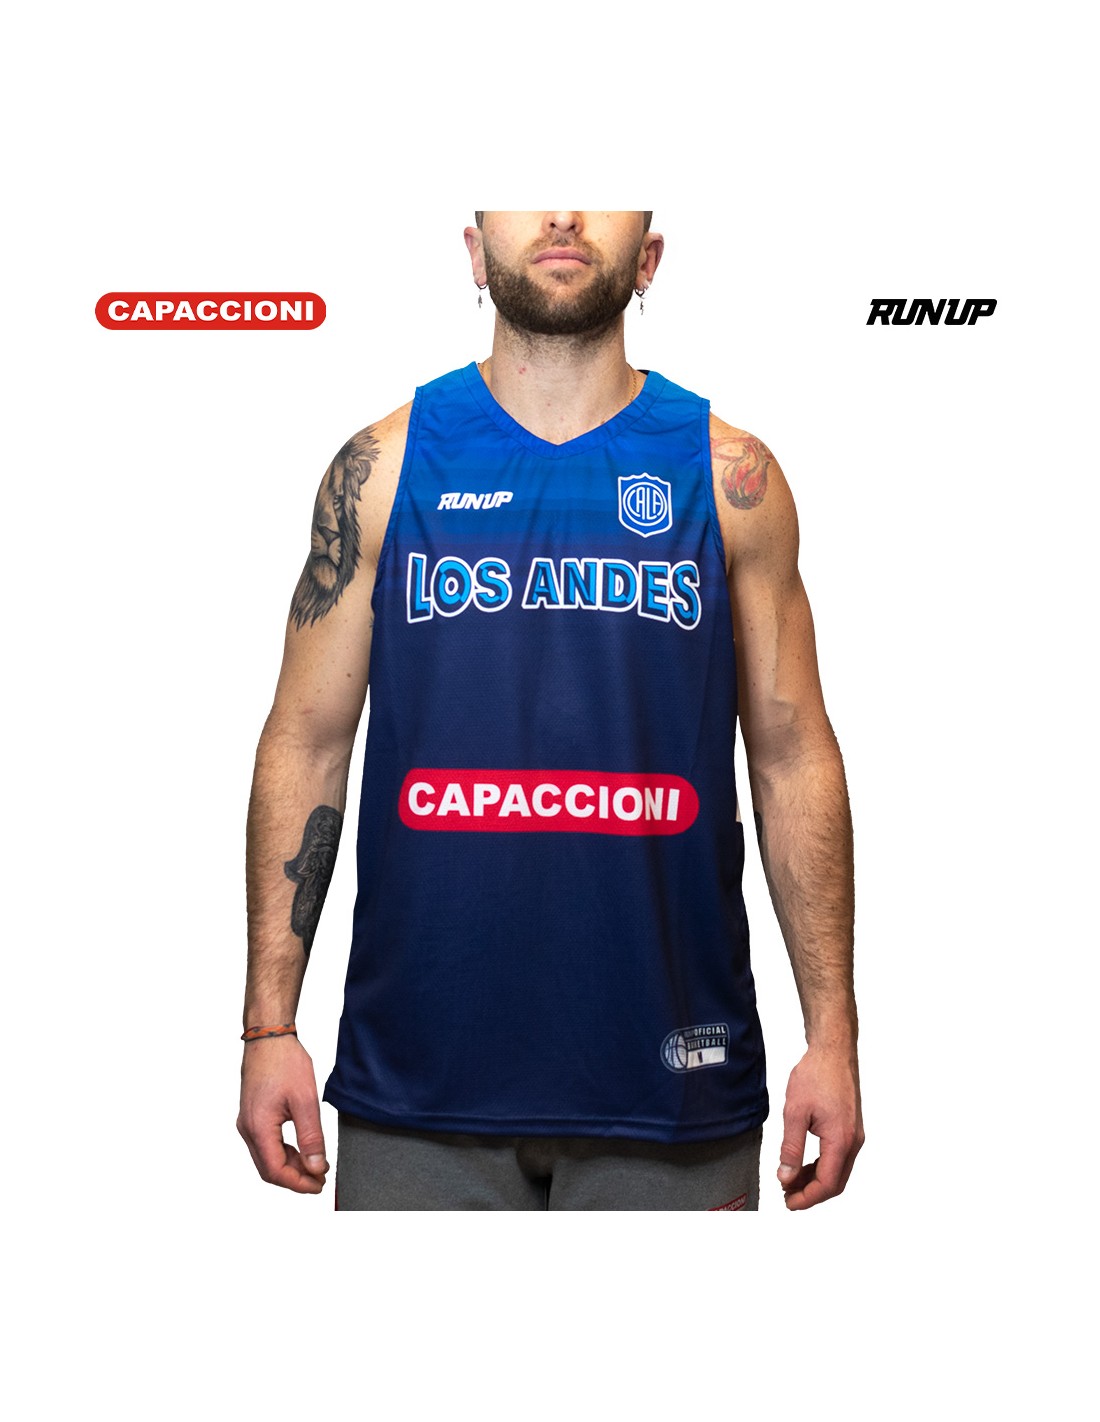 Camisa Los Andes - Promoção